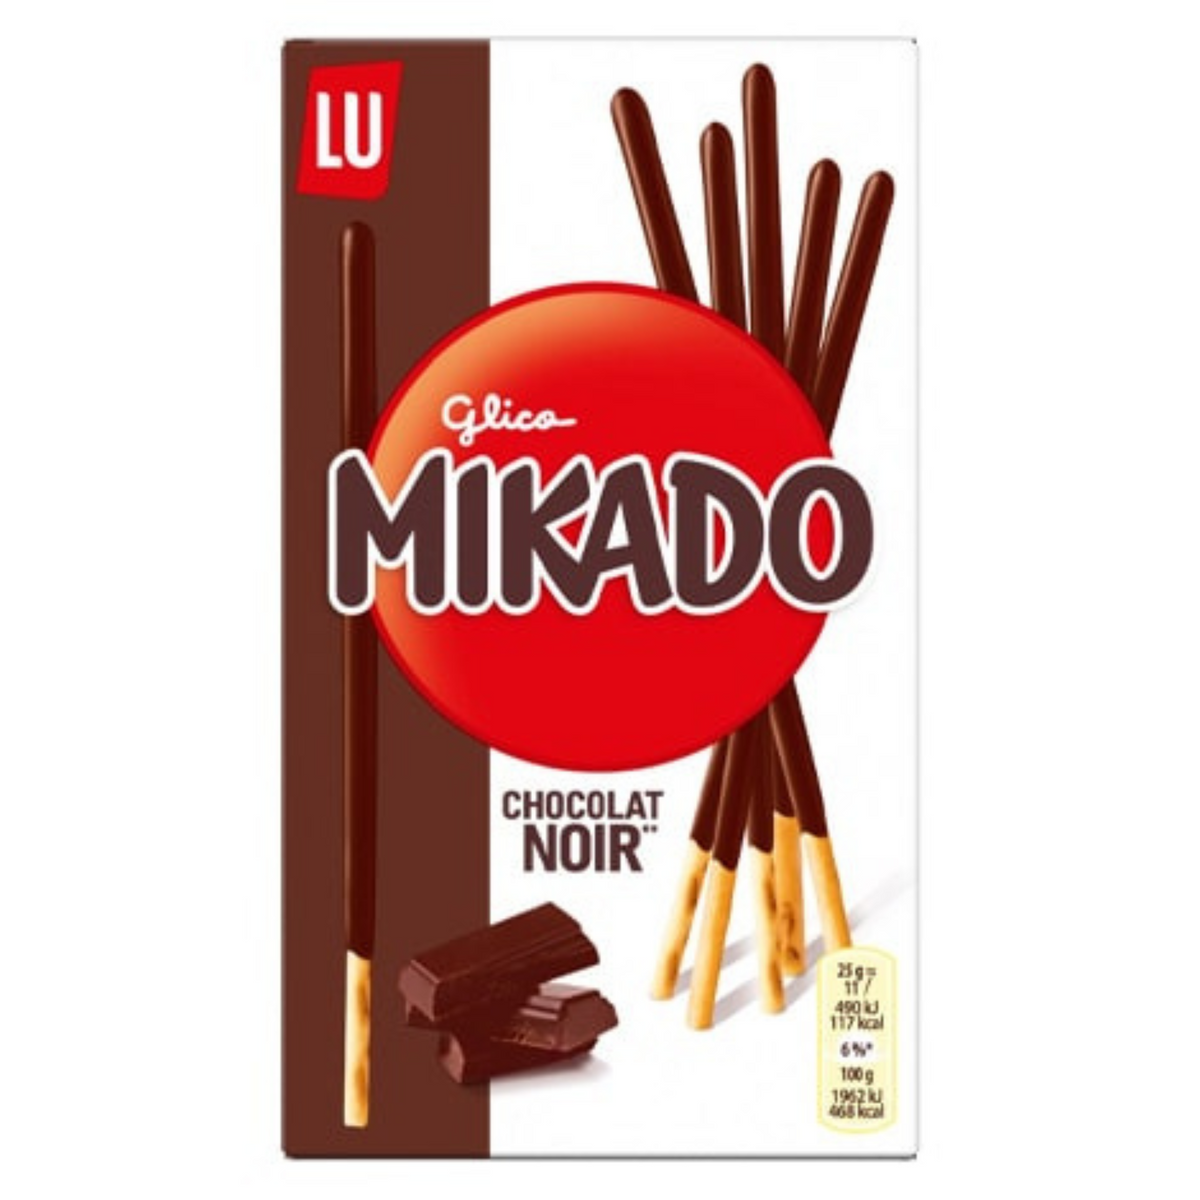 Mikado chocolat noir, un biscuit fin et croquant enrobé d'un délicieux nappage au chocolat noir.